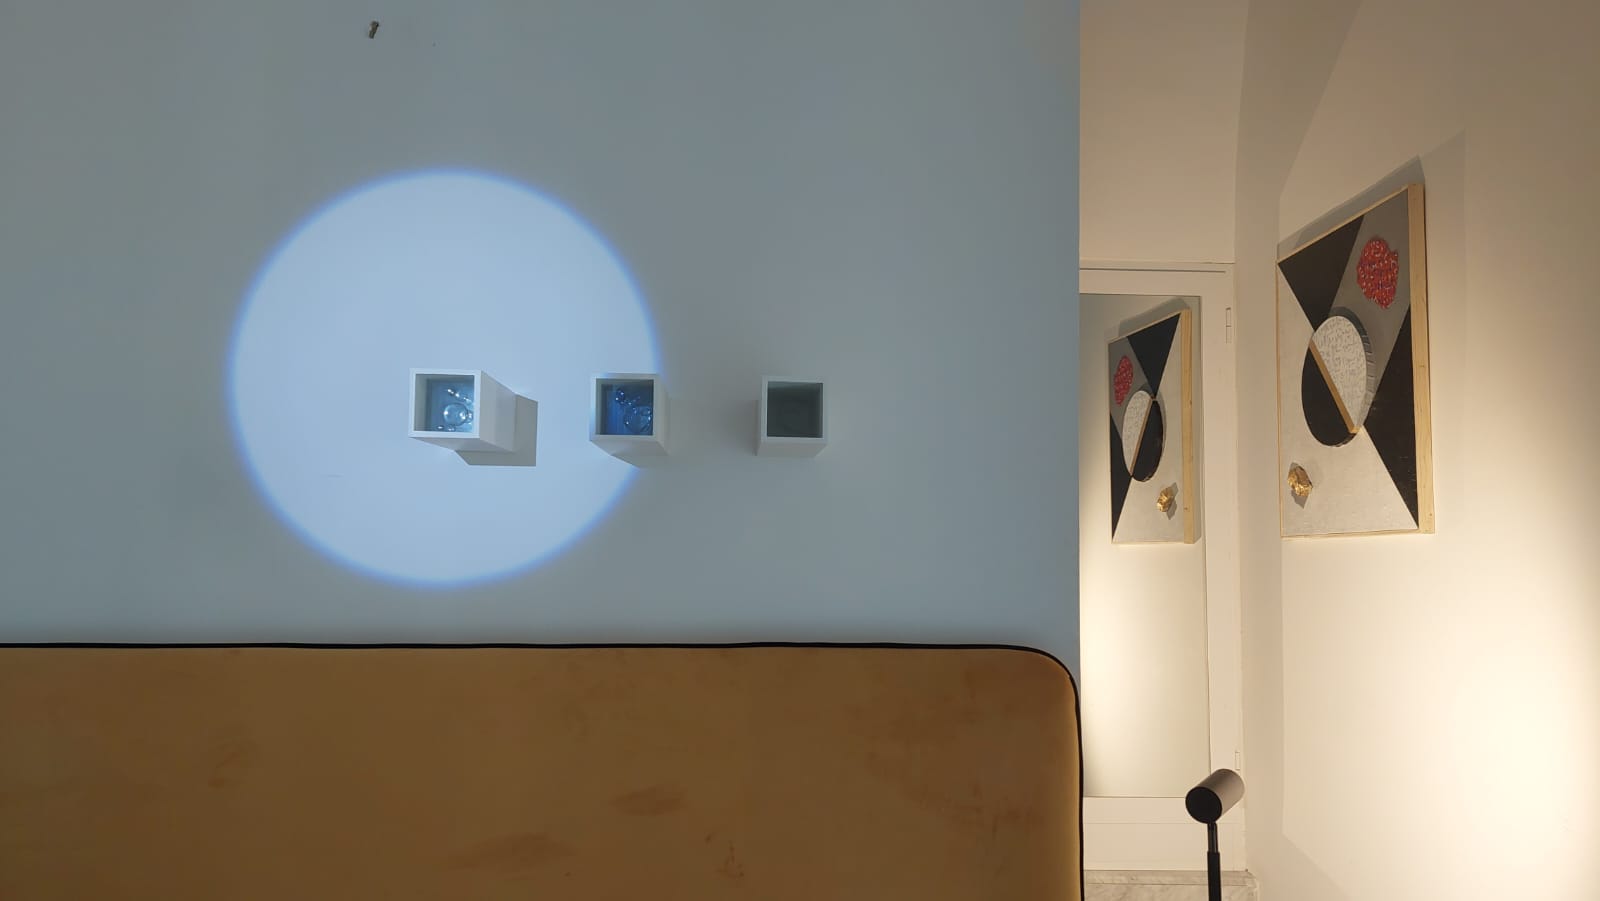 Il 17 dicembre inaugurazione della mostra “Guardando la luna” con gli artisti Peppe Leone e Max Coppeta